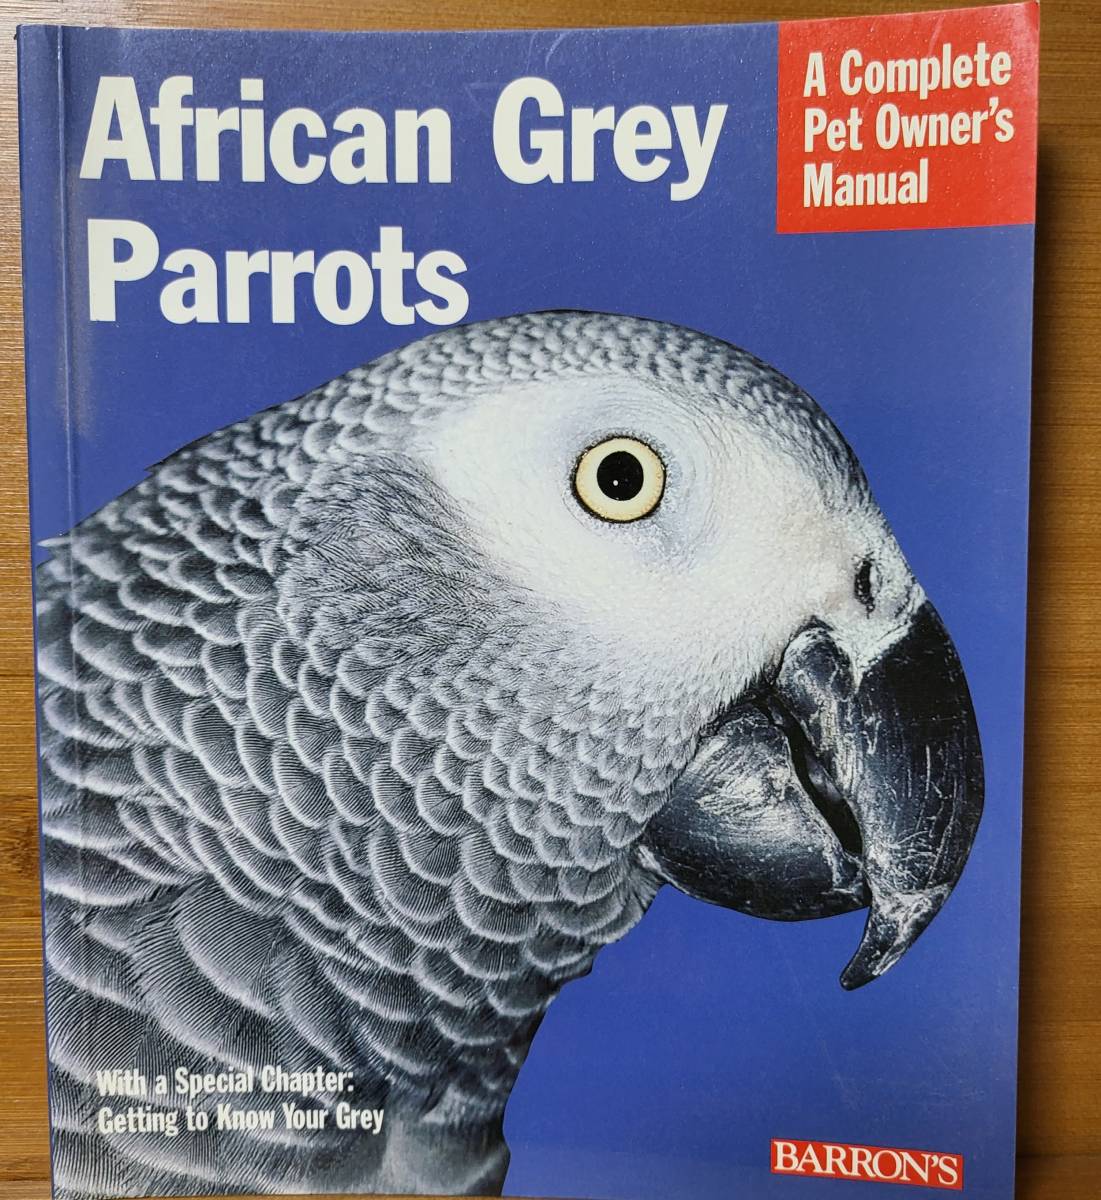 African Grey Parrots Africa n* серый *pa Rod youm. разведение manual иностранная книга английская версия 